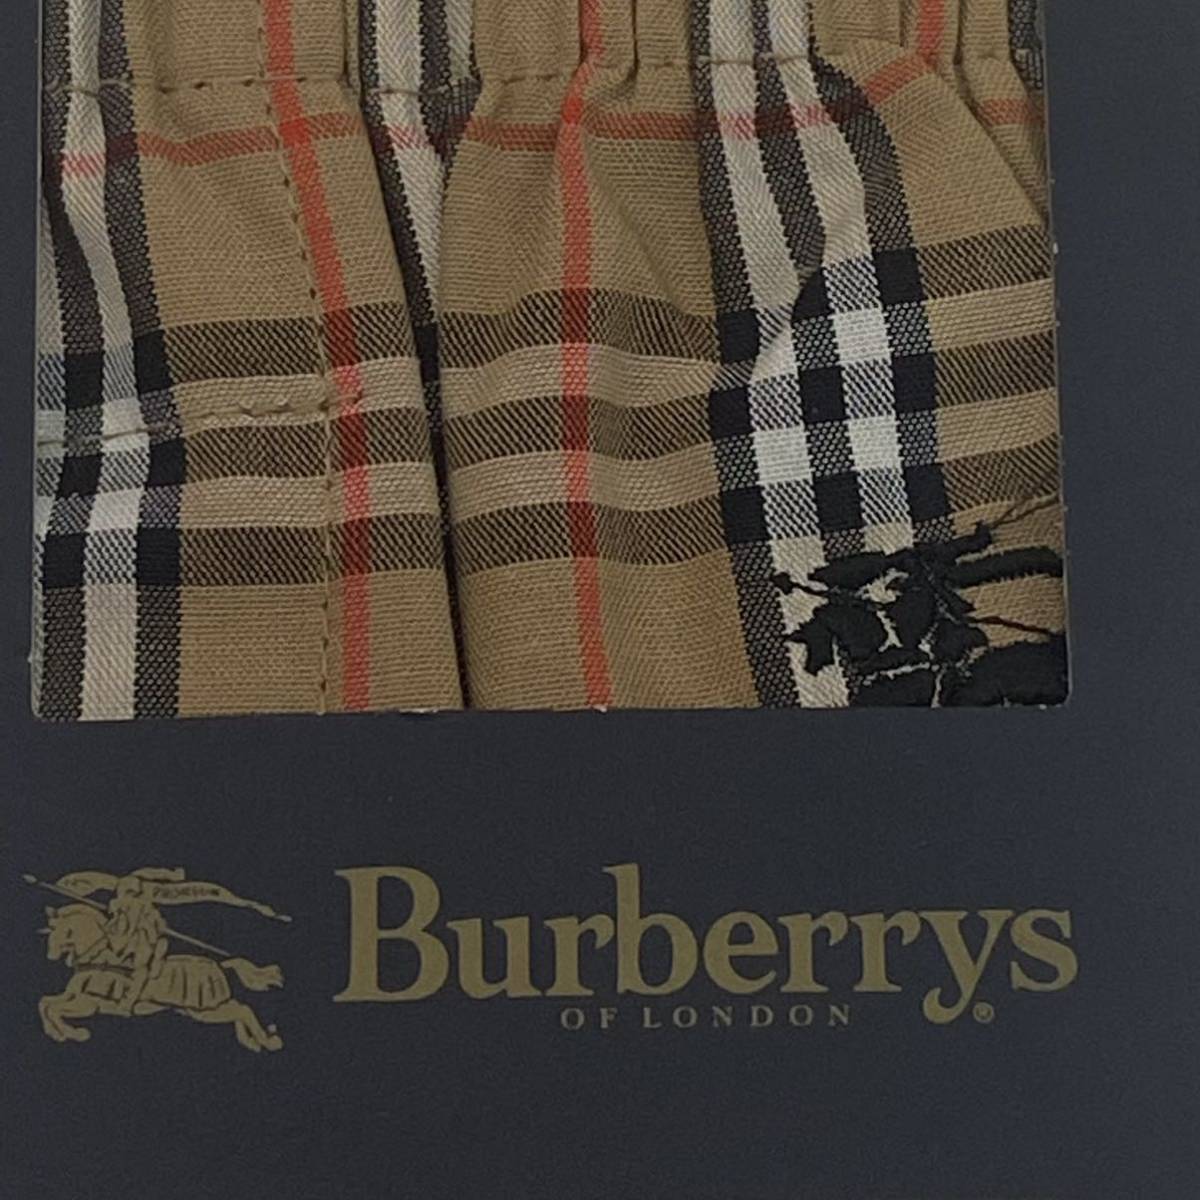 [ бесплатная доставка ]BURBERRYS/ Burberry z/ новый товар не использовался / трусы /LA/noba проверка / шланг вышивка (166y)